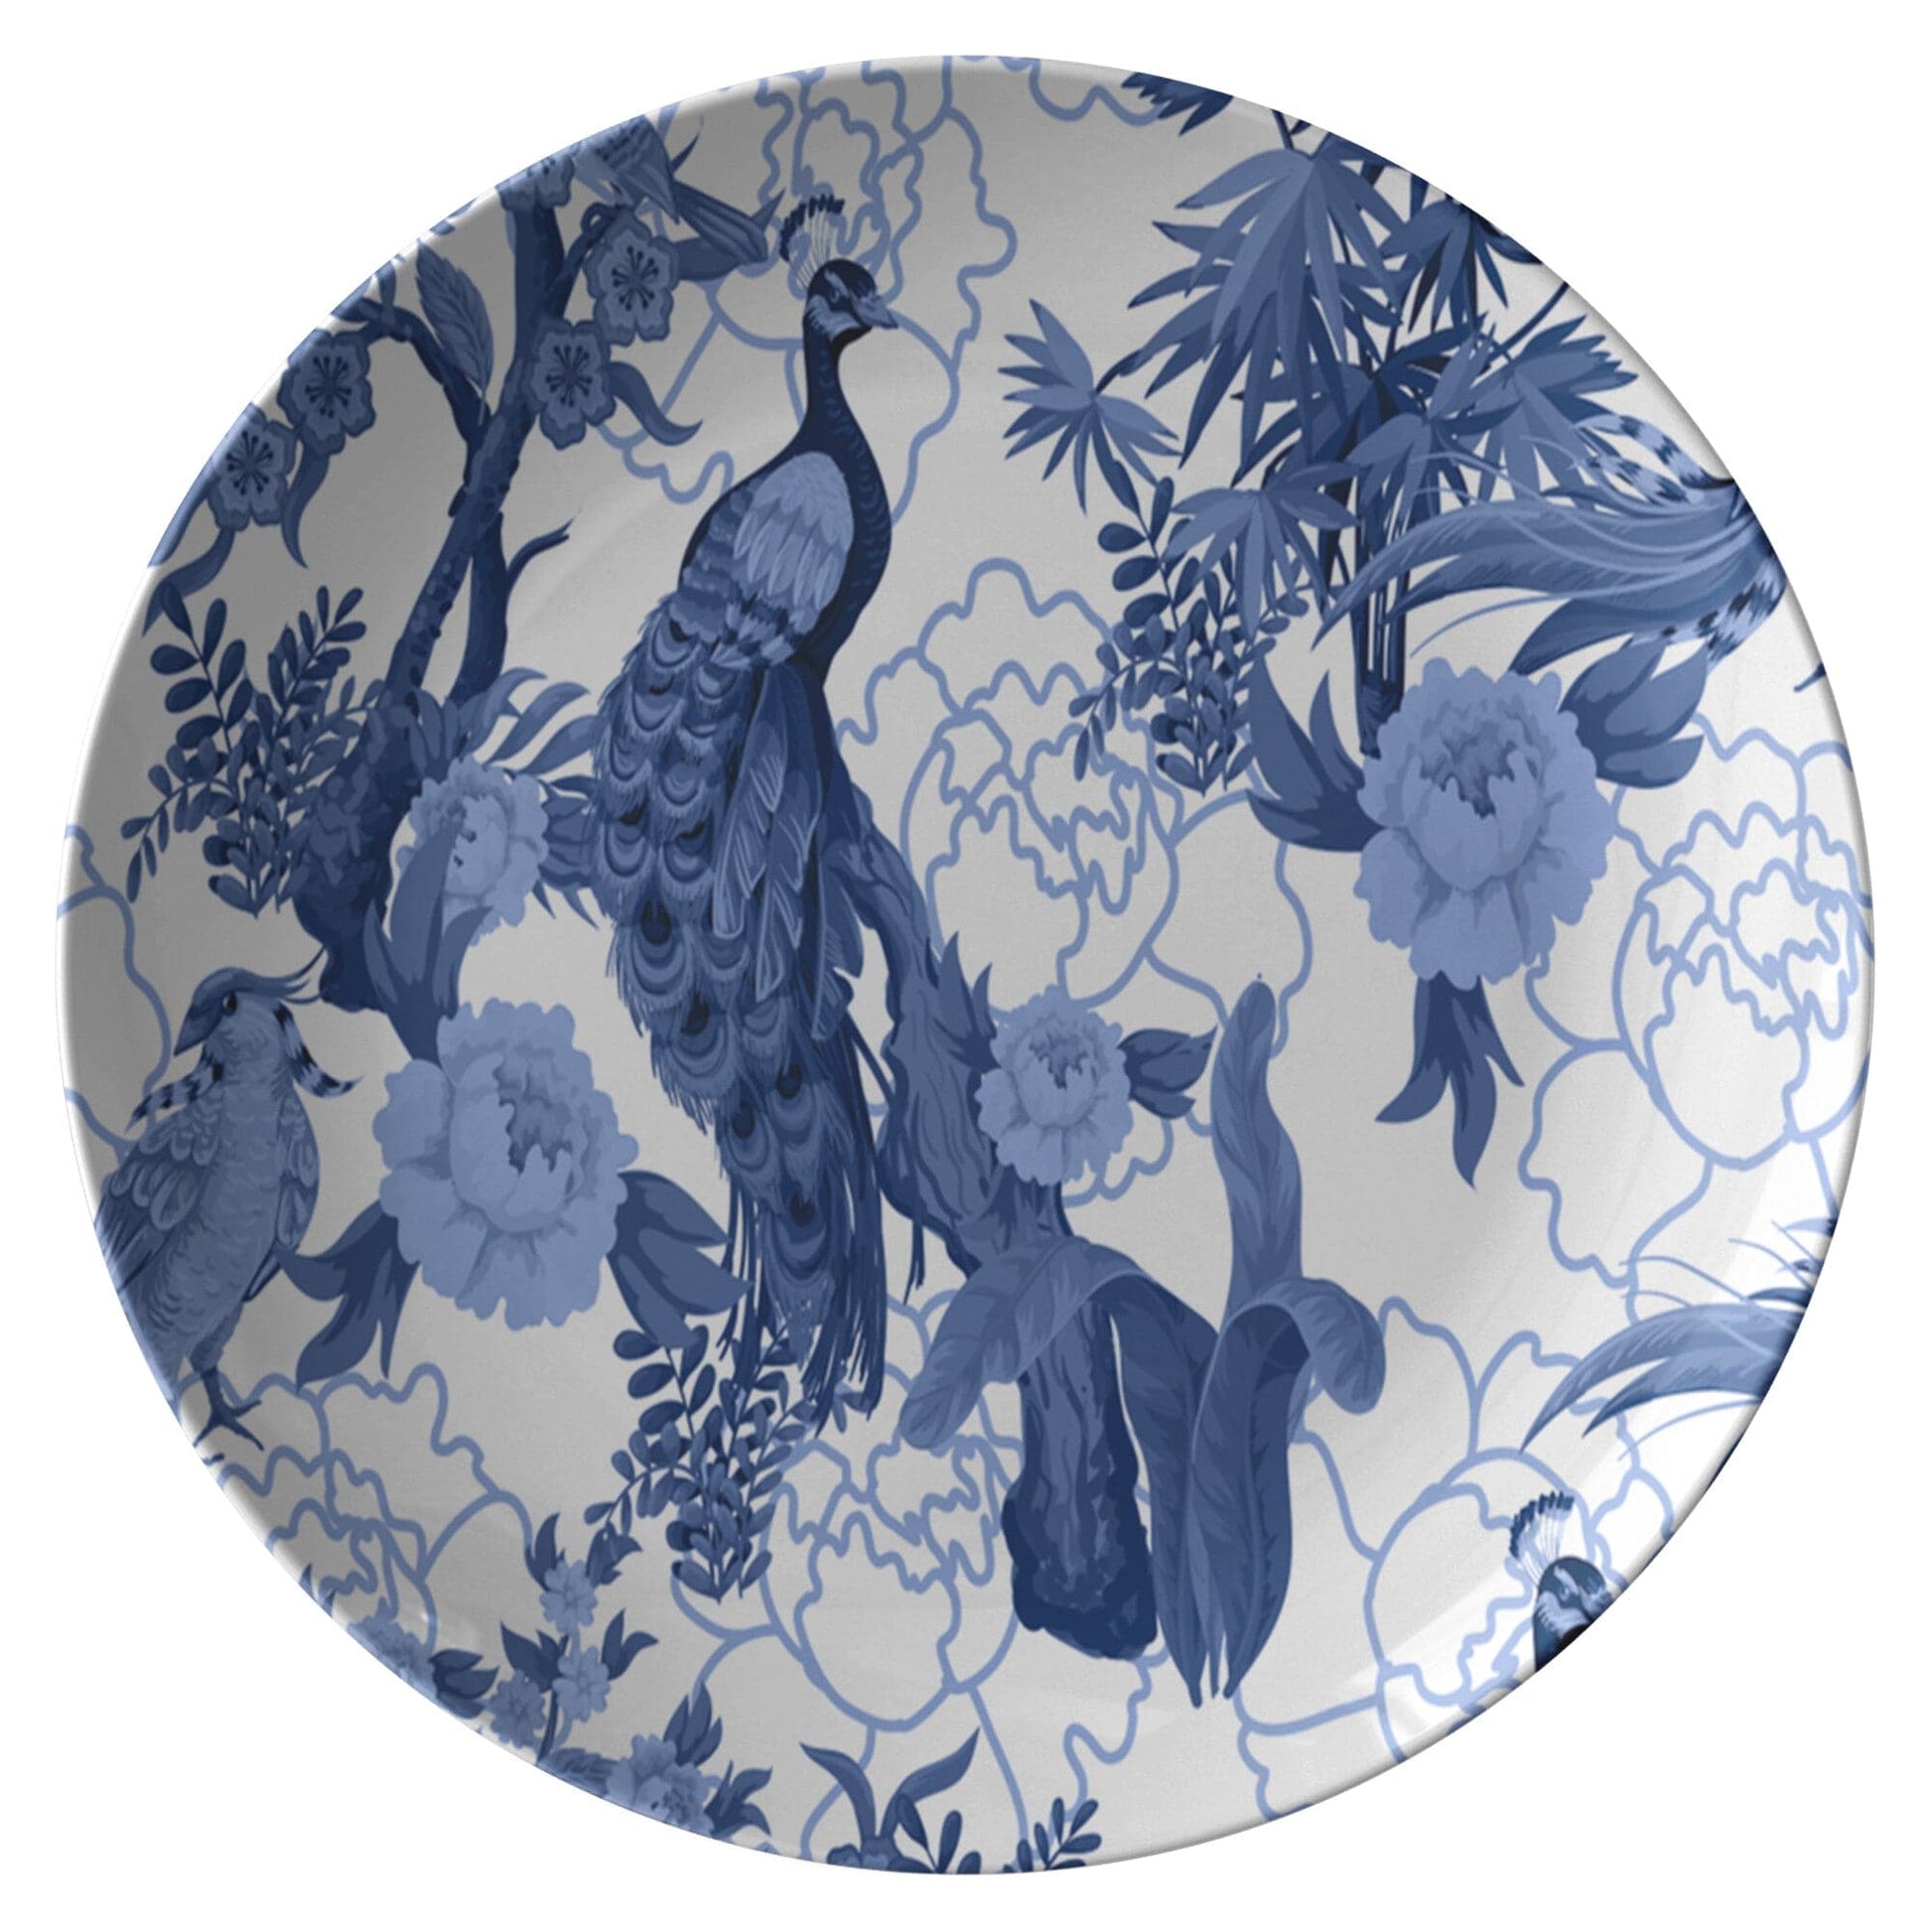 Kate McEnroe New York Dinner Plate in Elegant Chinoiserie Floral Peacock Plates